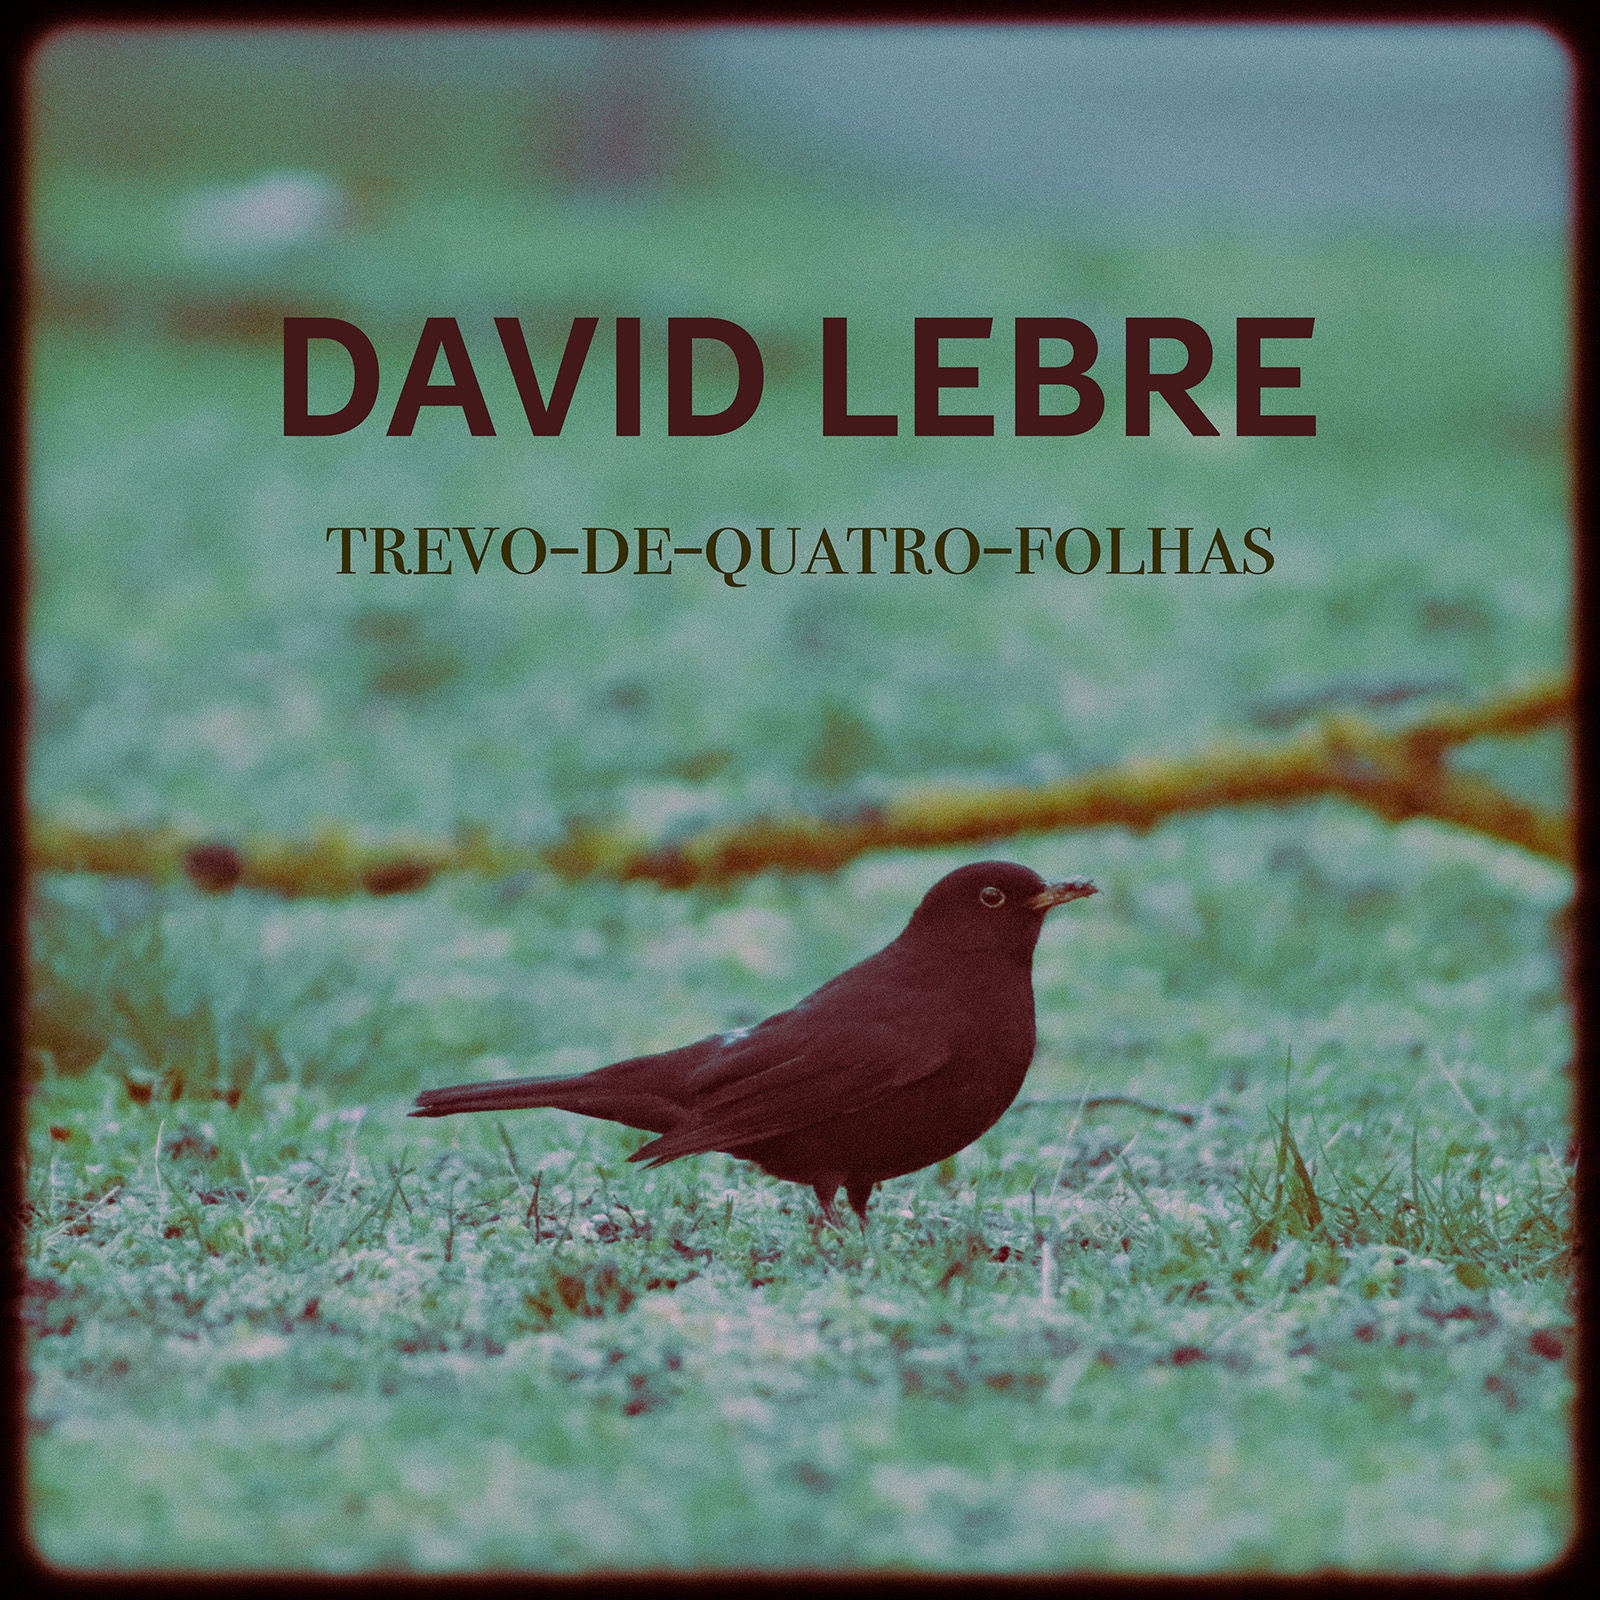 David Lebre - Trevo-de-quatro-folhas